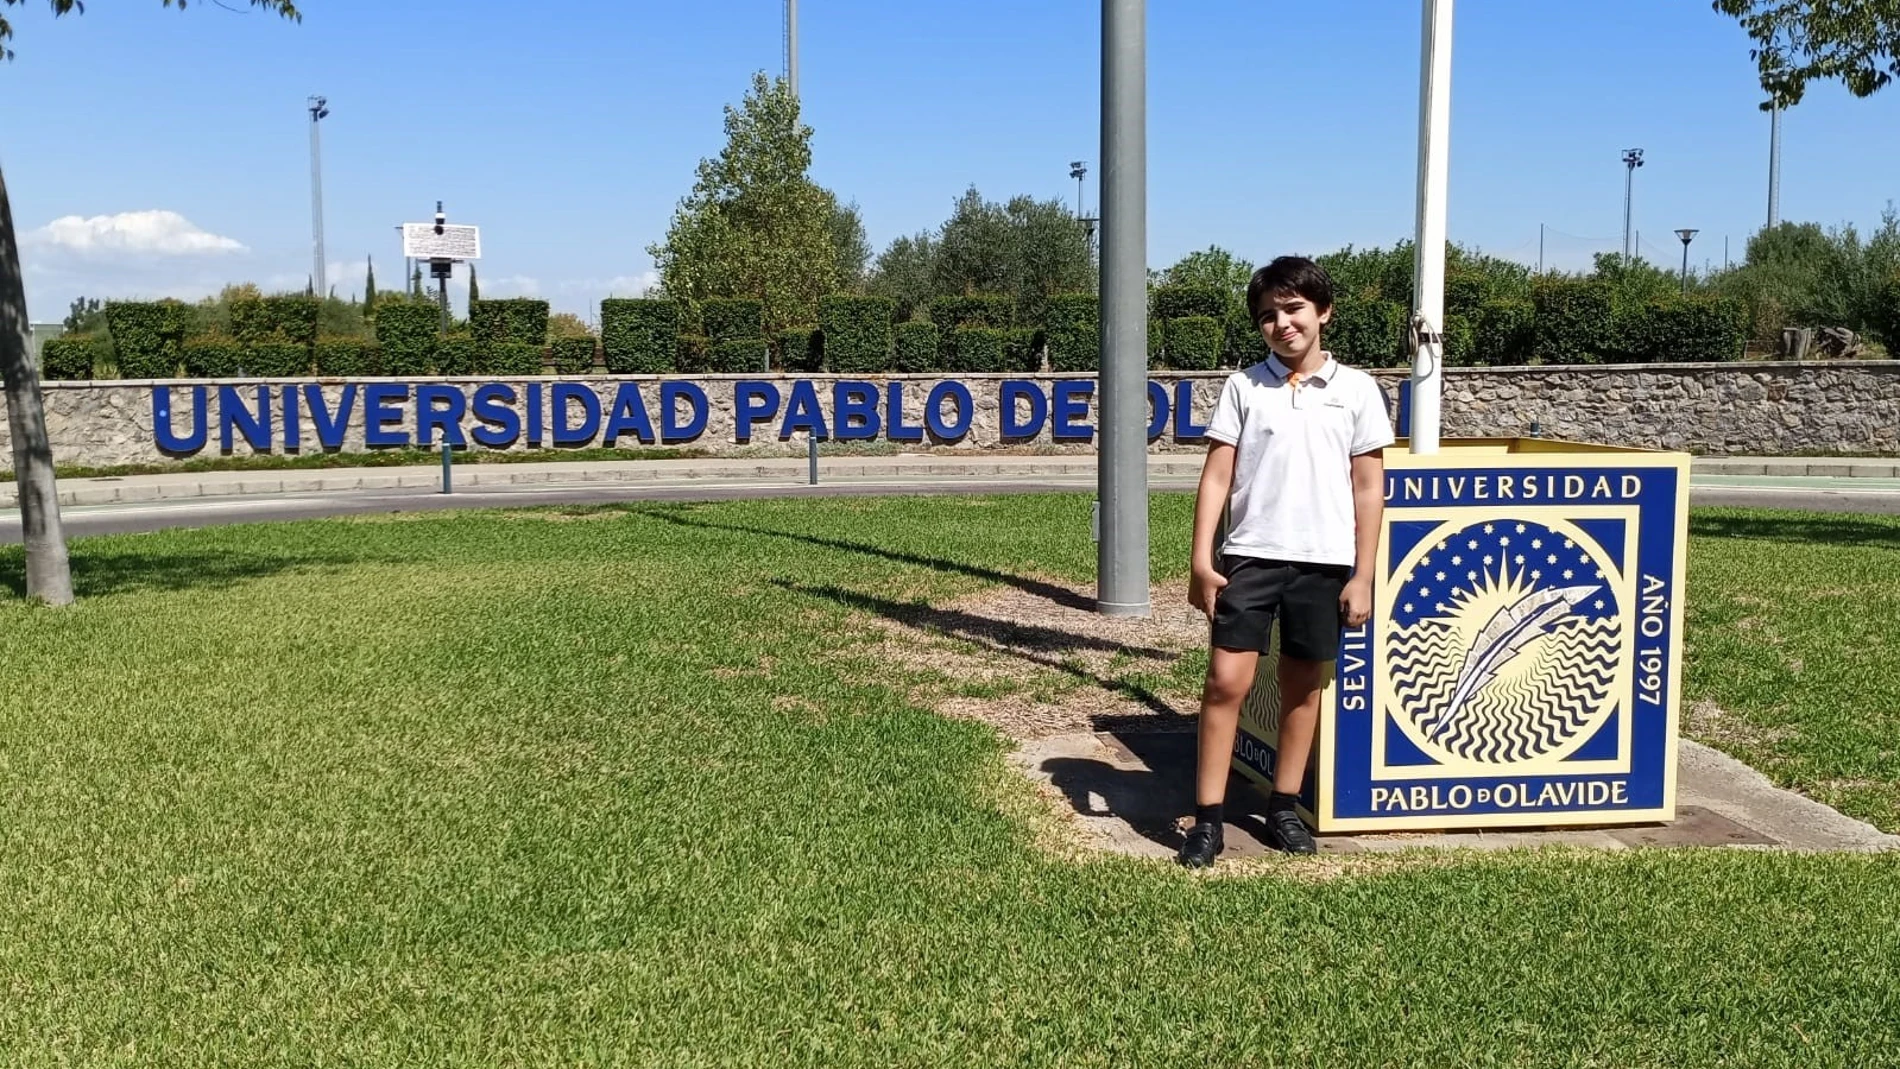 Daniel, con 12 años y estudiante de la Universidad, le pide a los Reyes poder visitar la NASA 